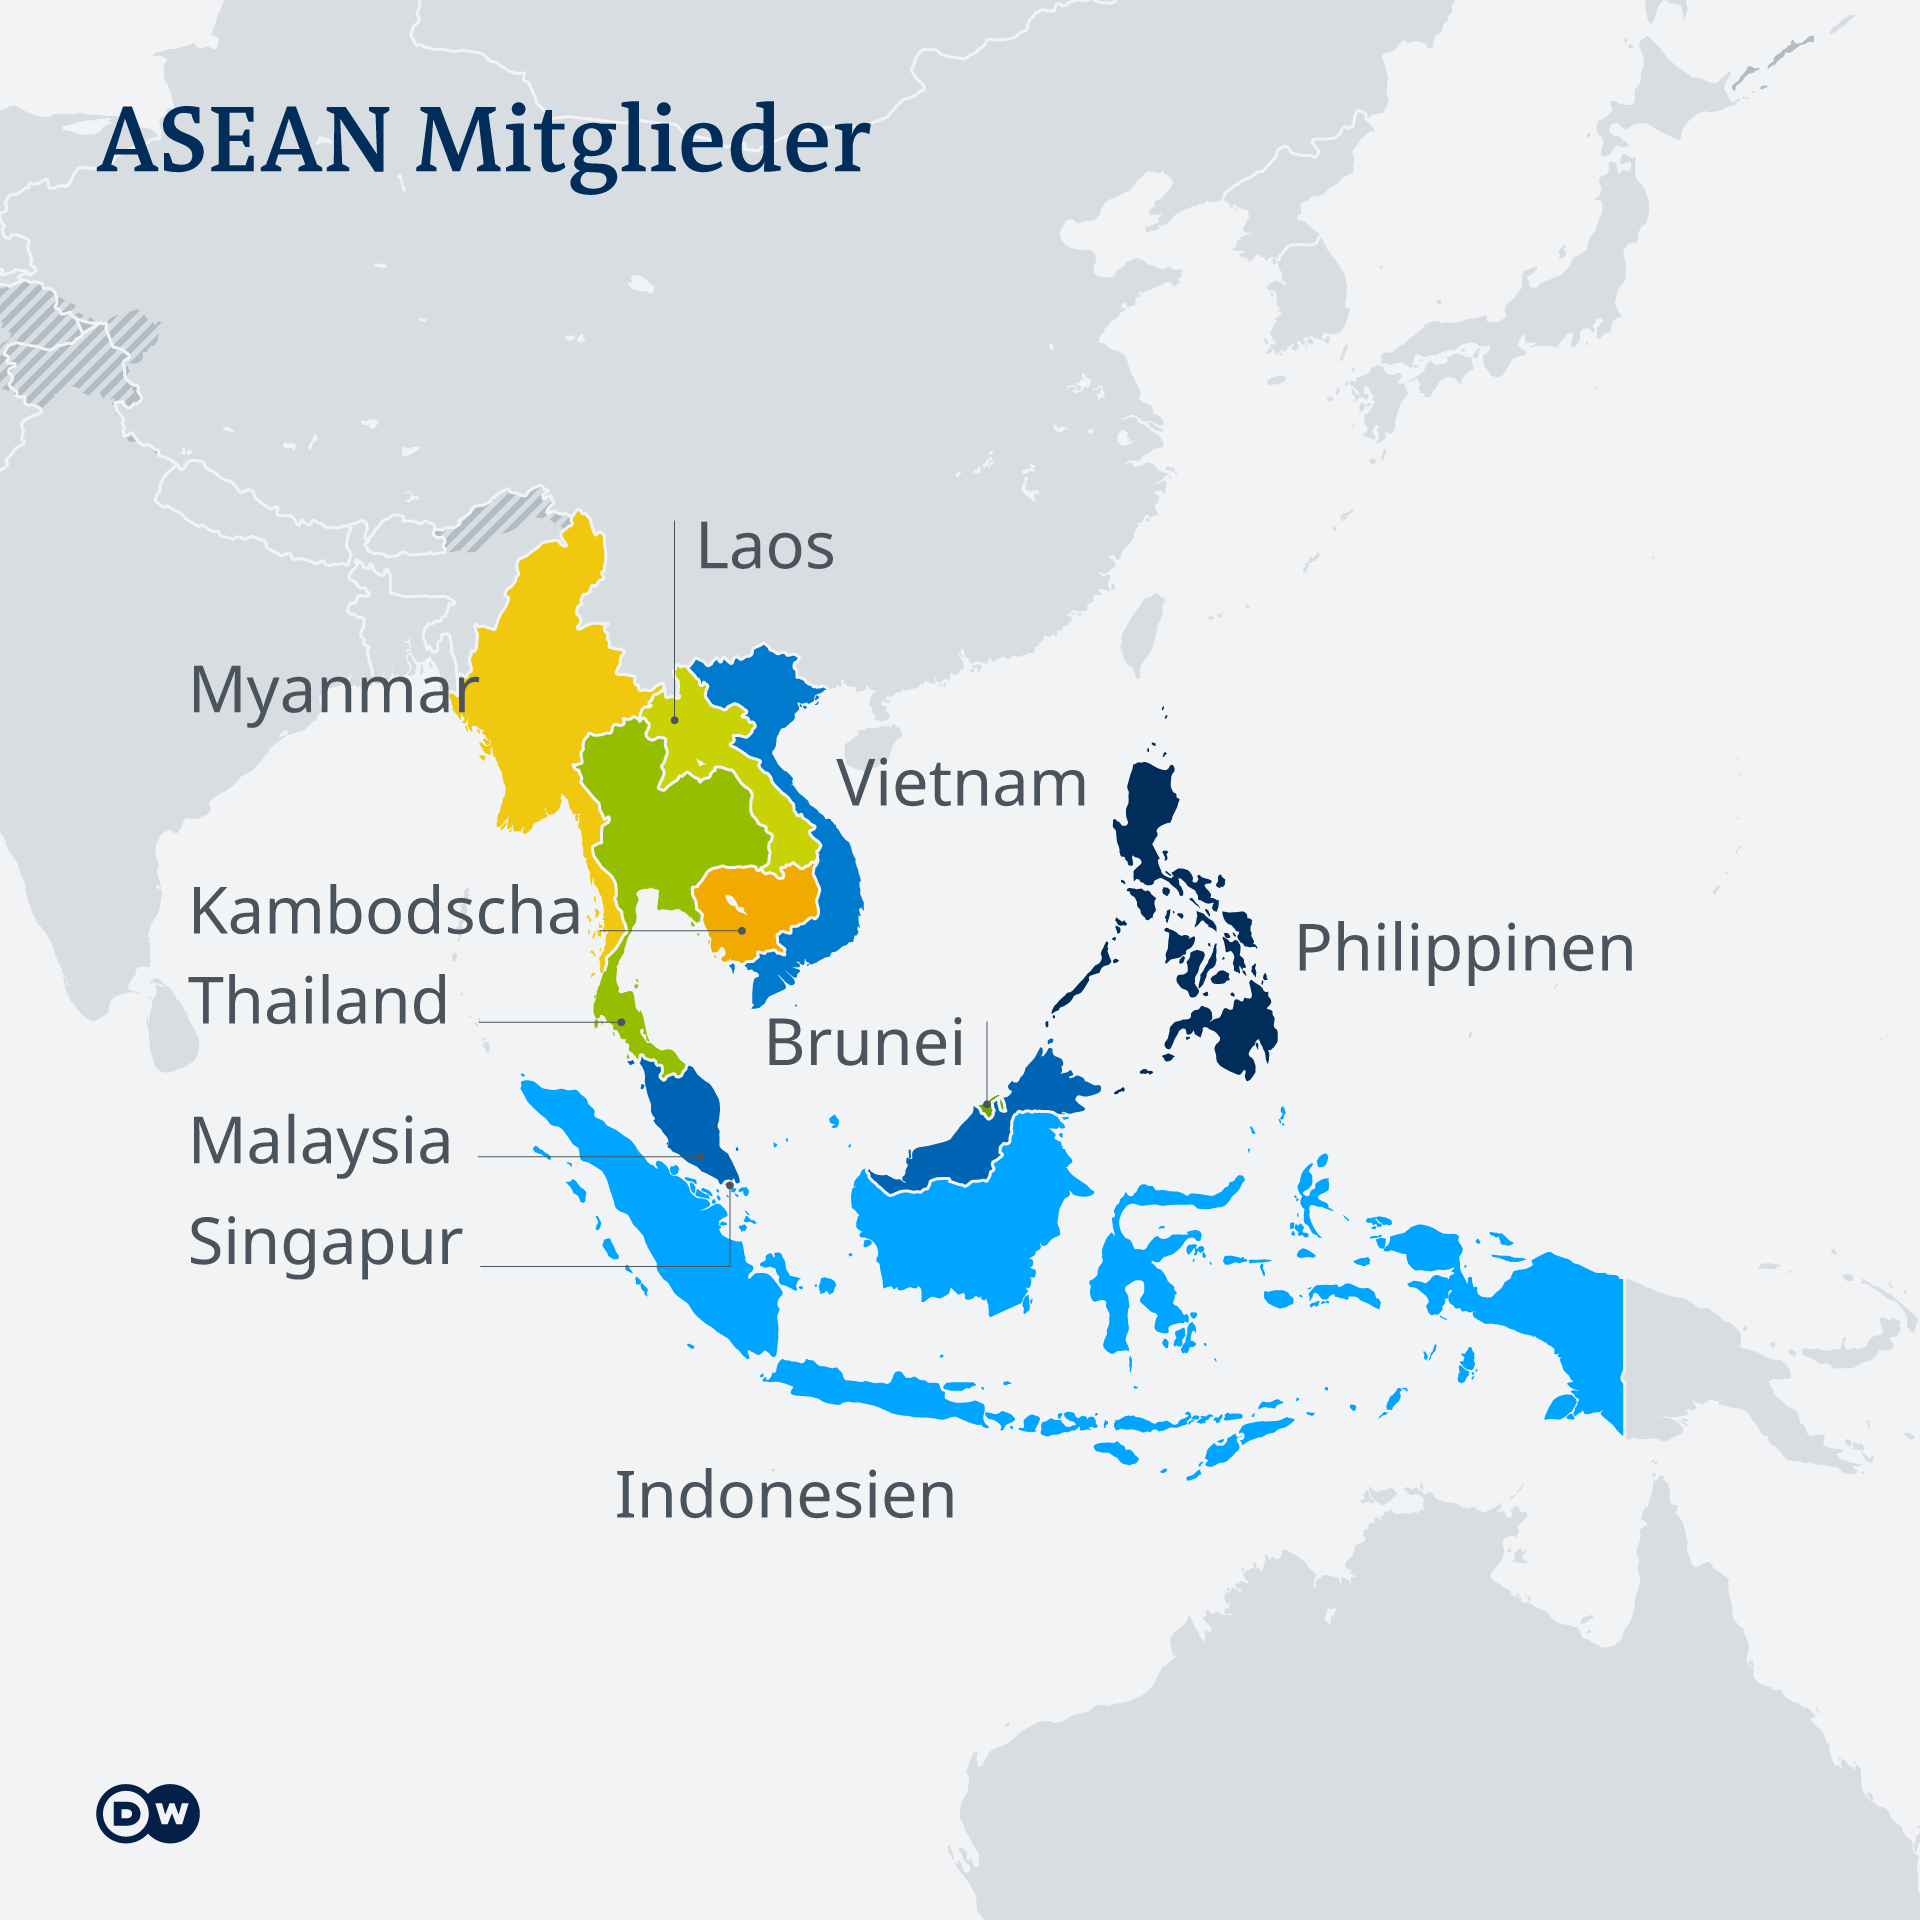 Die Infografik zeigt eine Karte mit den zehn ASEAN-Staaten in Südostasien. Dazu gehören Myanmar, Kambodscha, Thailand, Malaysia, Singapur, Indonesien, Brunei, Philippinen, Vietnam und Laos.